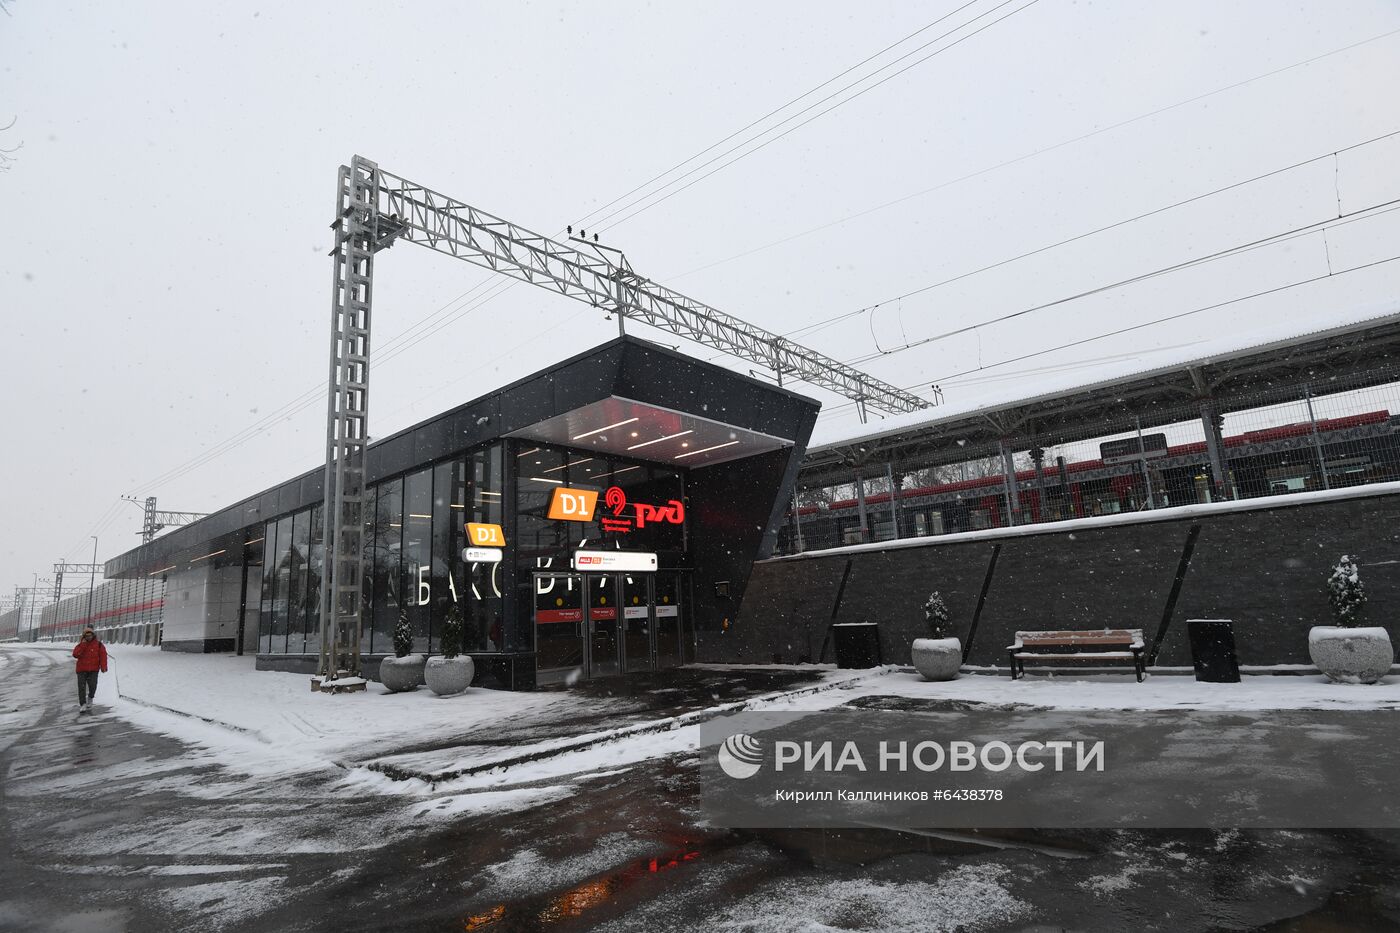 Открытие после реконструкции станции МЦД-1 "Баковка"